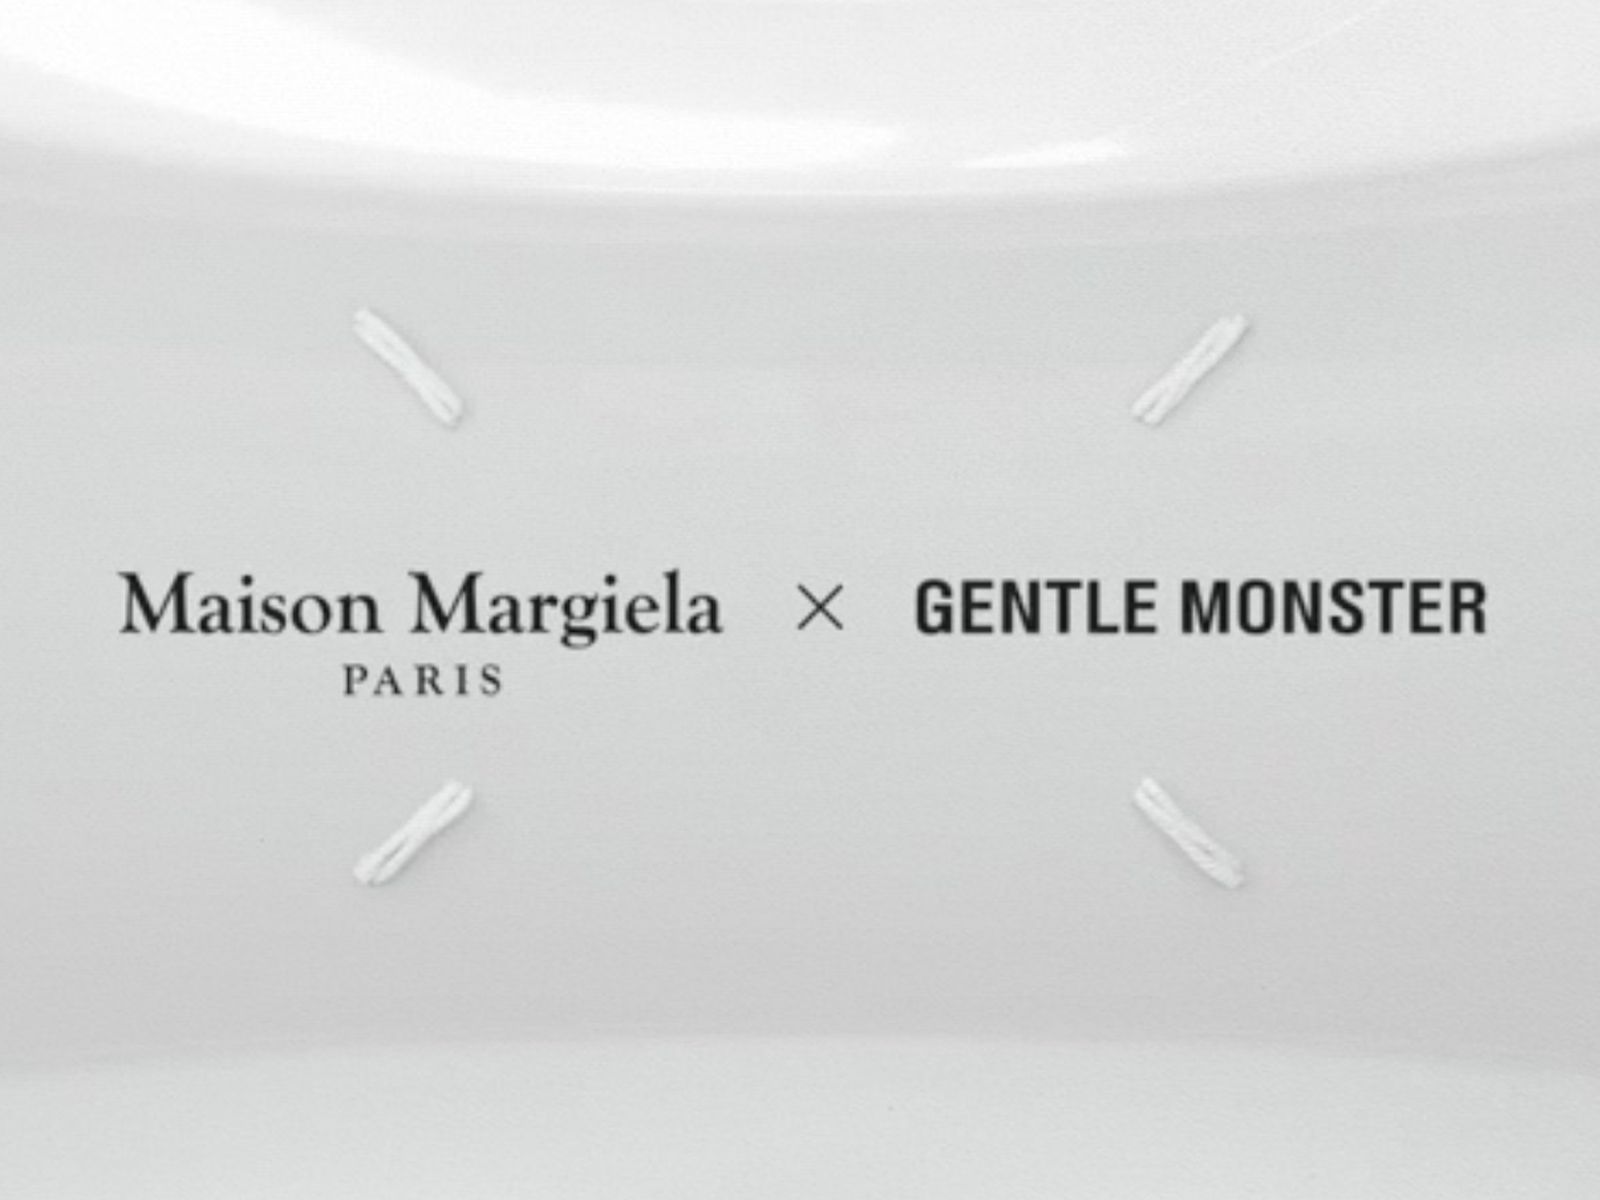 Gentle Monster confirma su próxima colaboración junto a Maison Margiela